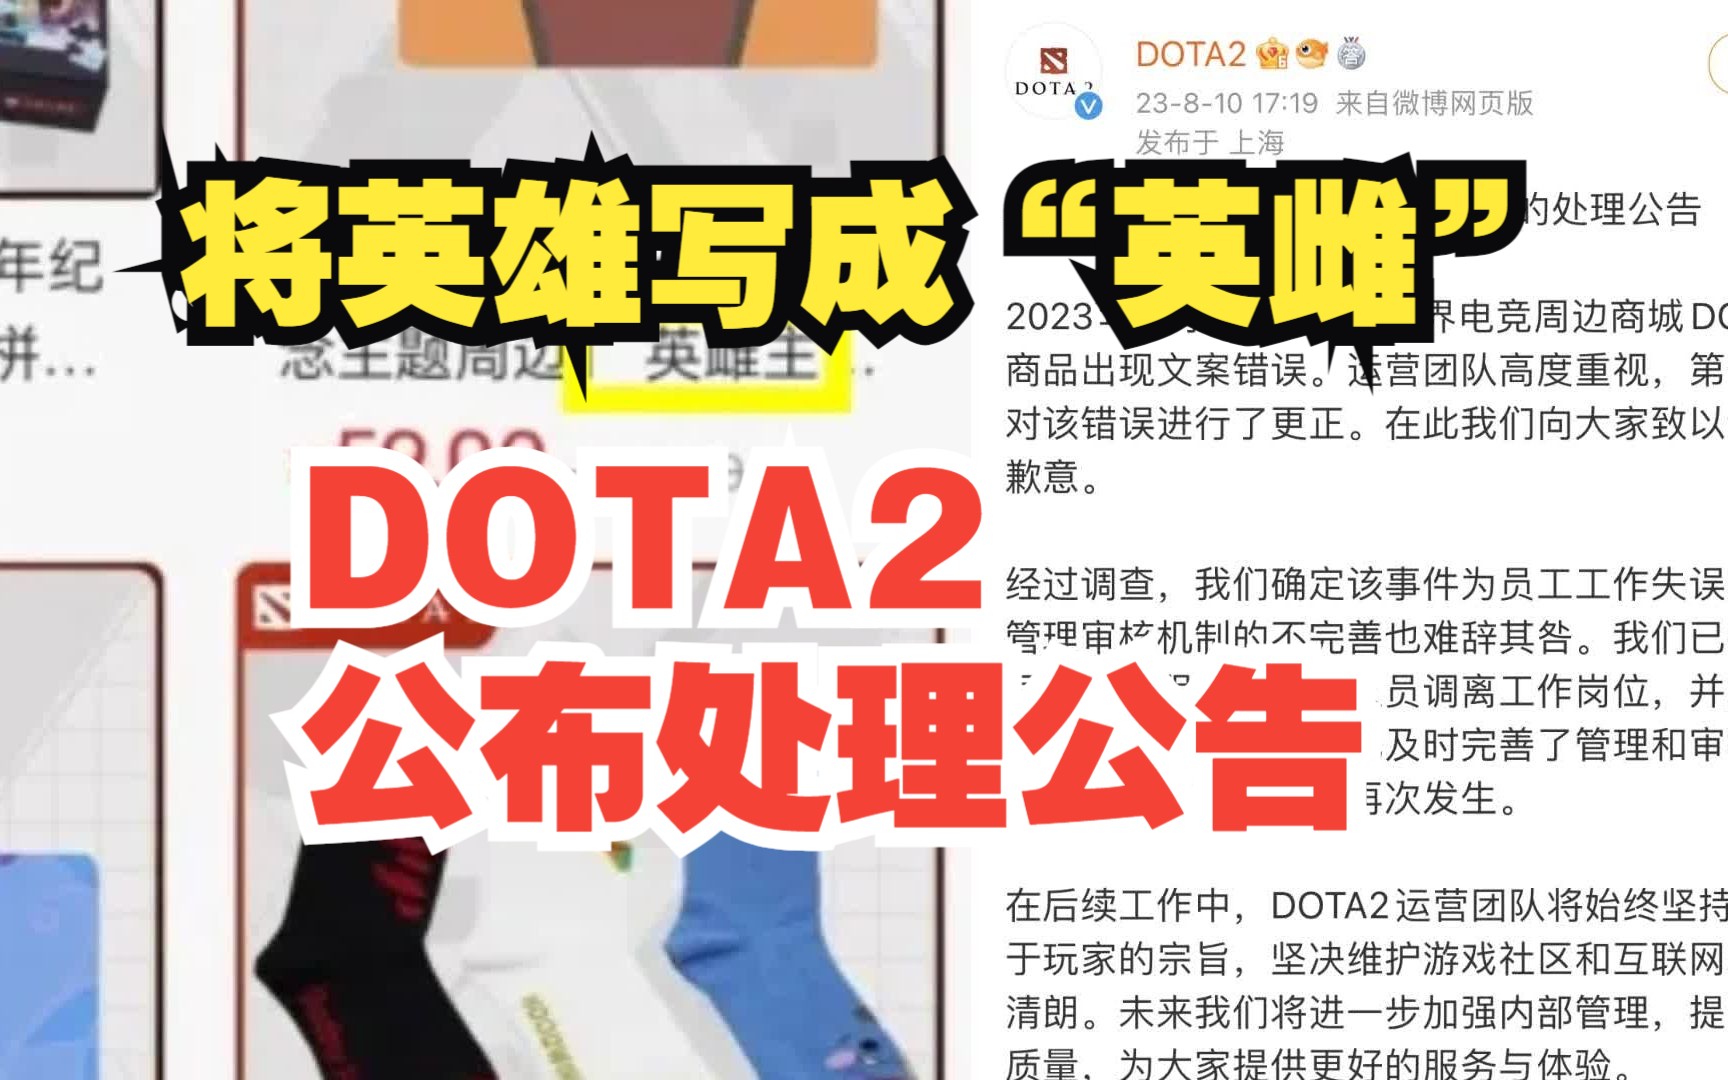 DOTA2官方回应周边商品将英雄写成“英雌”：系员工失误 已调离岗位